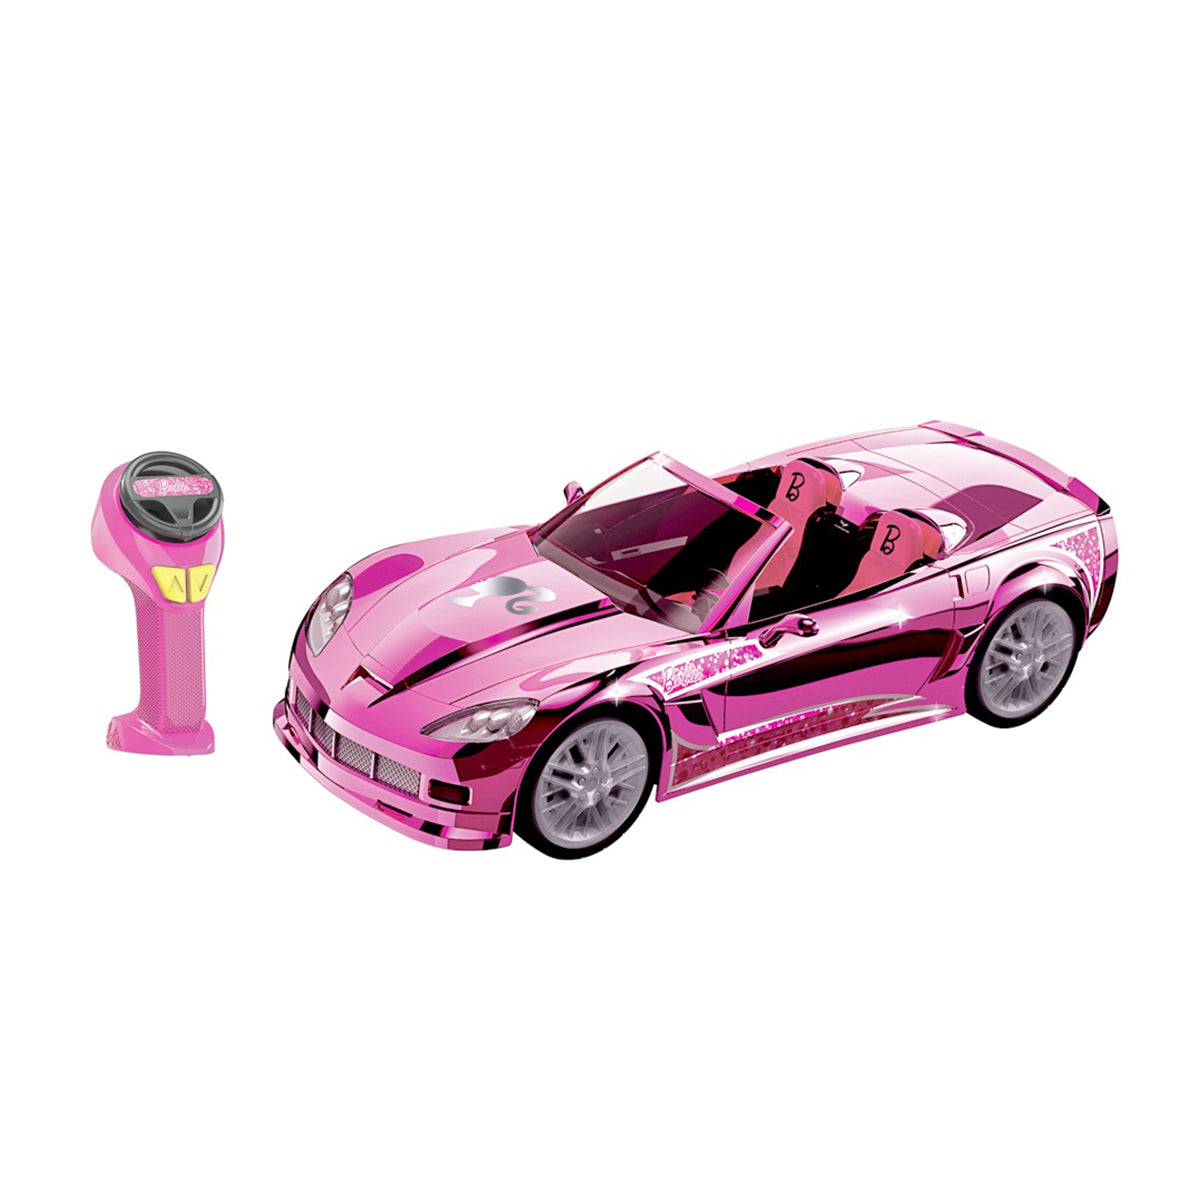 Barbie - RC Cruisin' Corvette